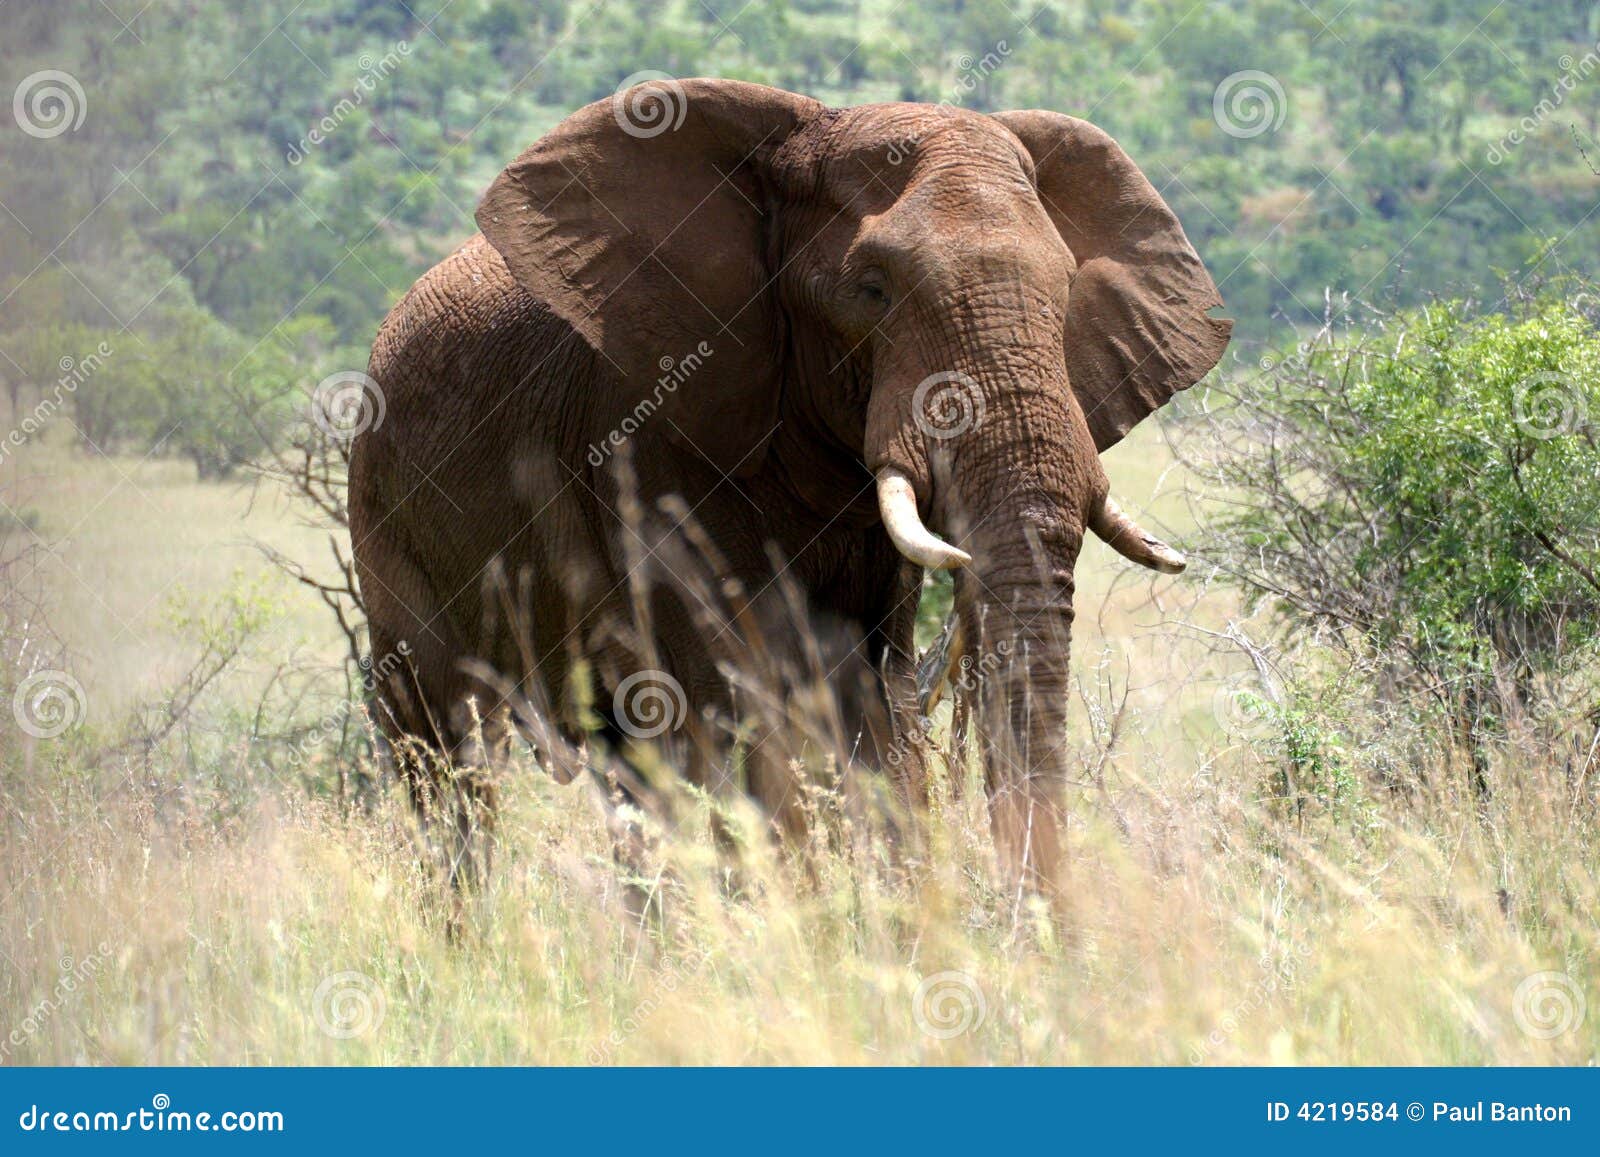 majestic elephant